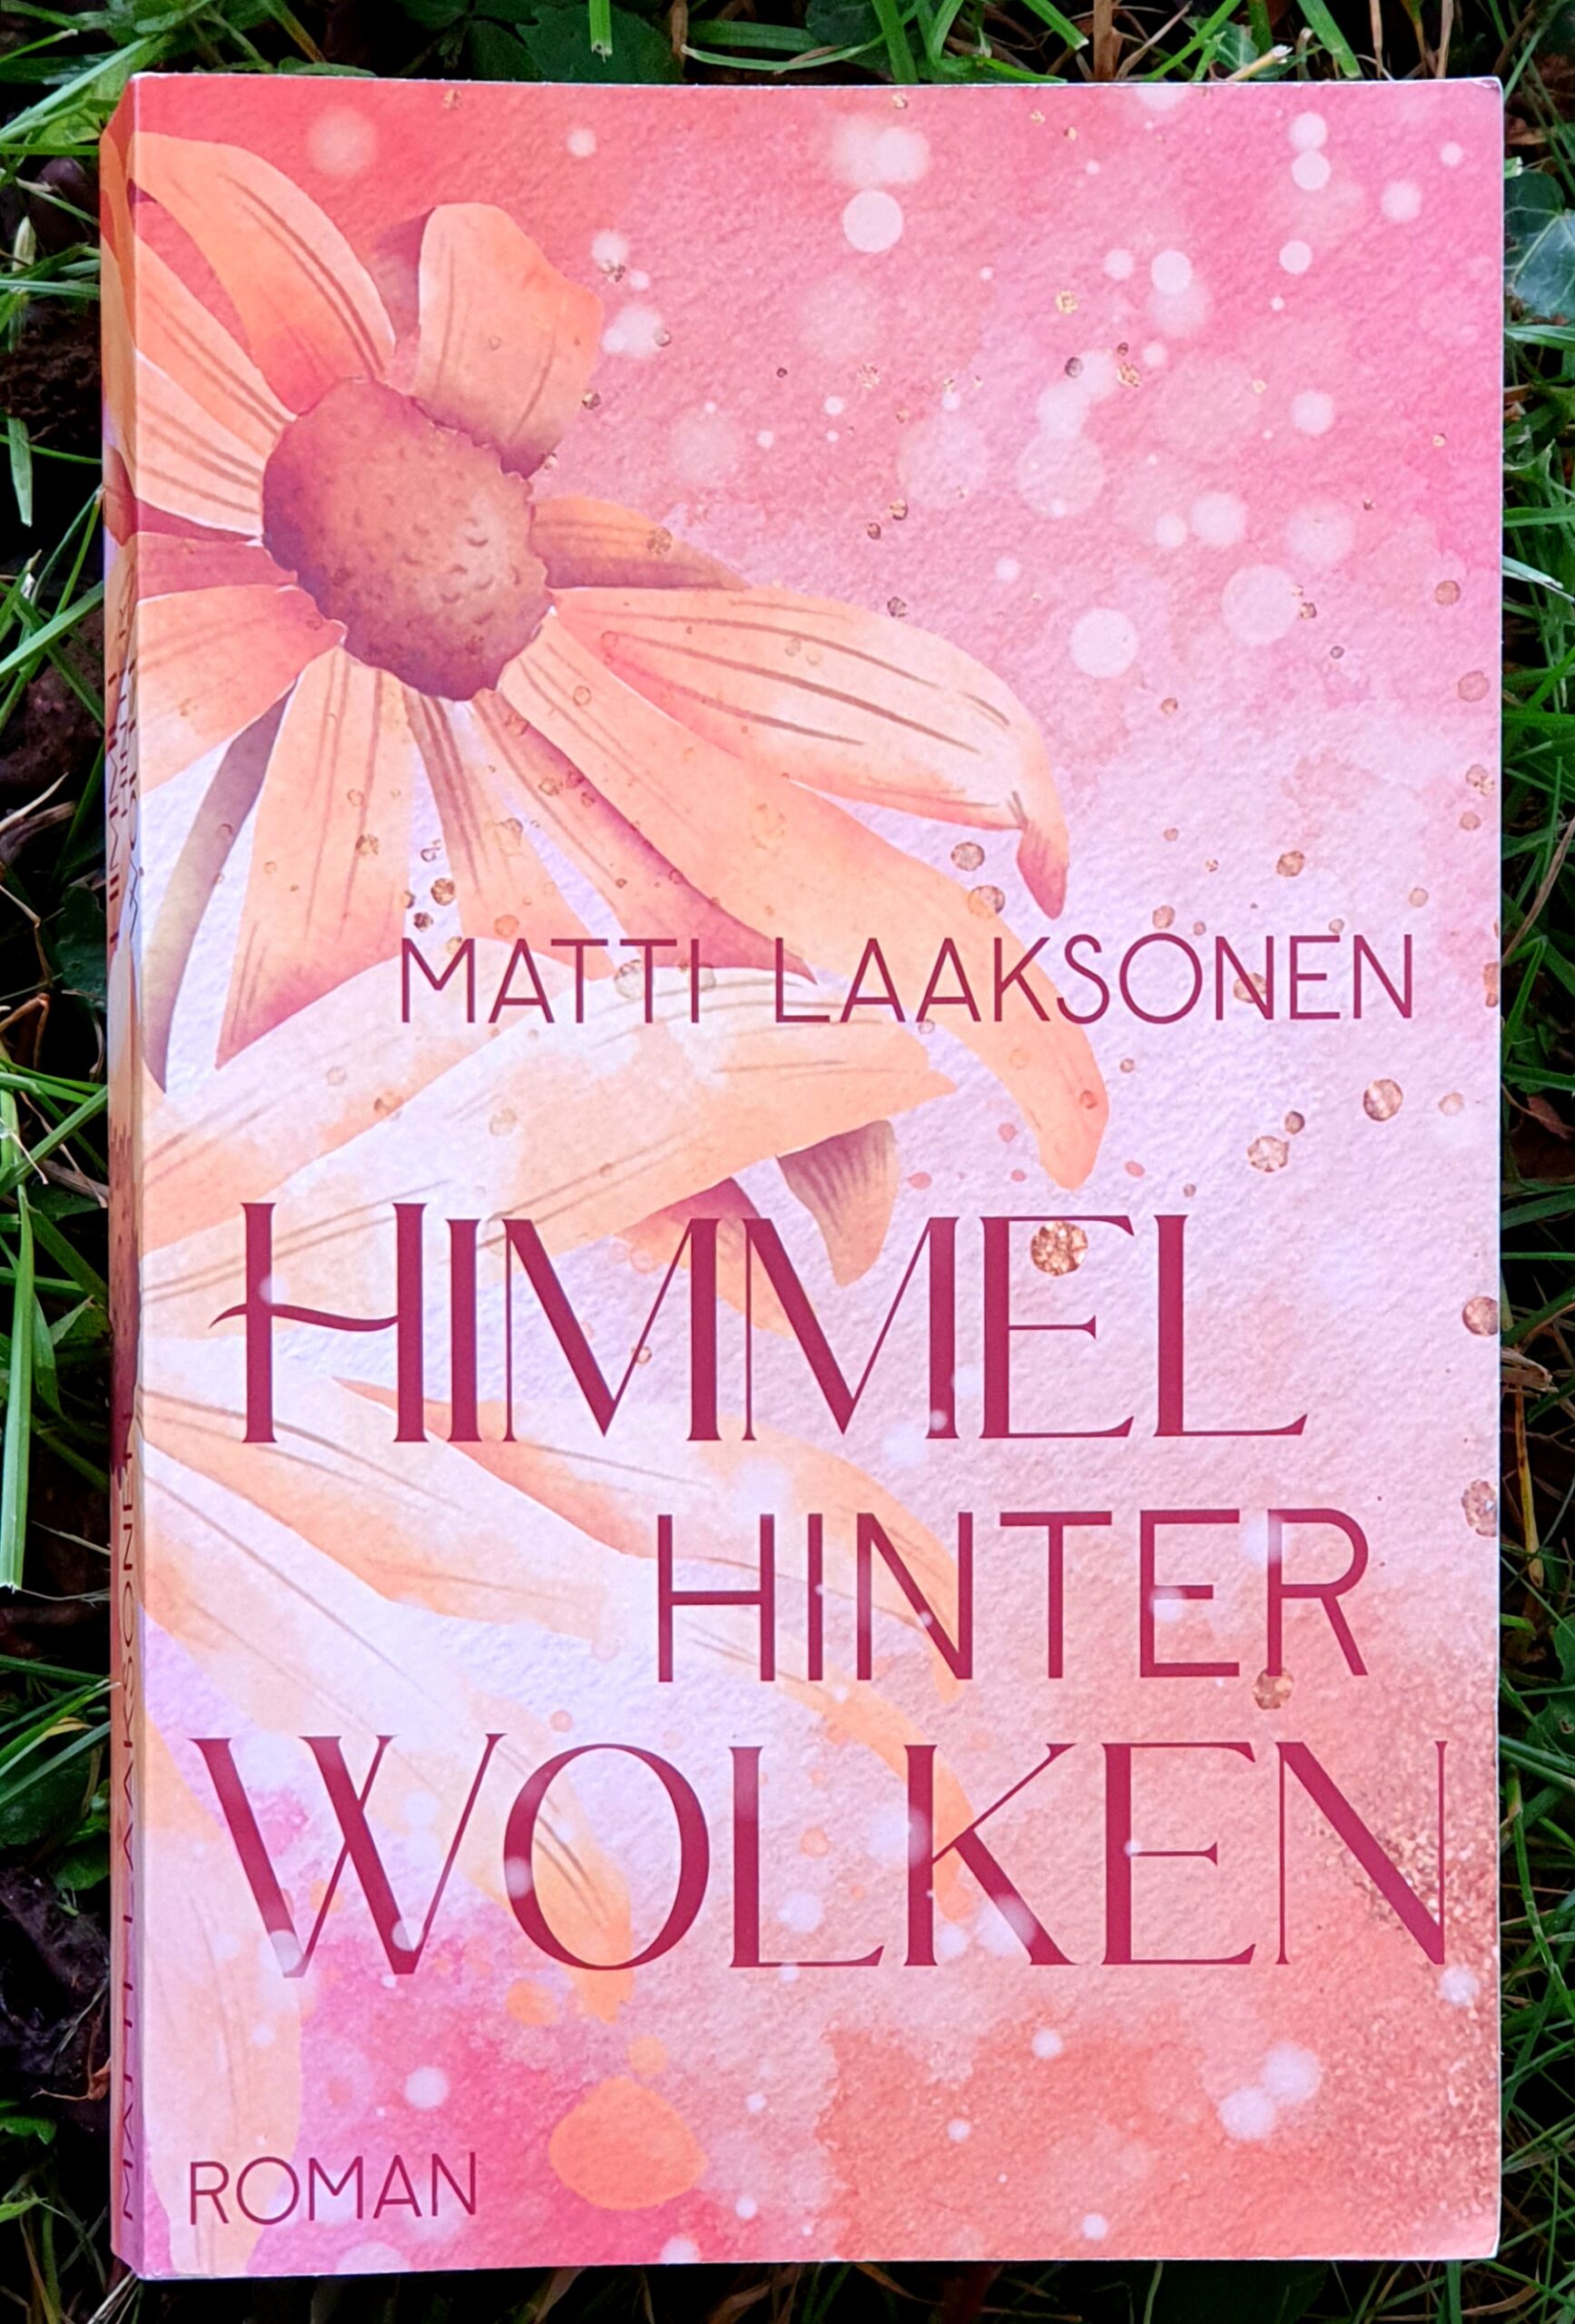 Buchdeckel in rosa und orange Tönen, ein große Blumen mit Wasserfarbeneffekt, in eleganten Buchstaben: Matti Laaksonen, Himmel hinter Wolken, Roman.